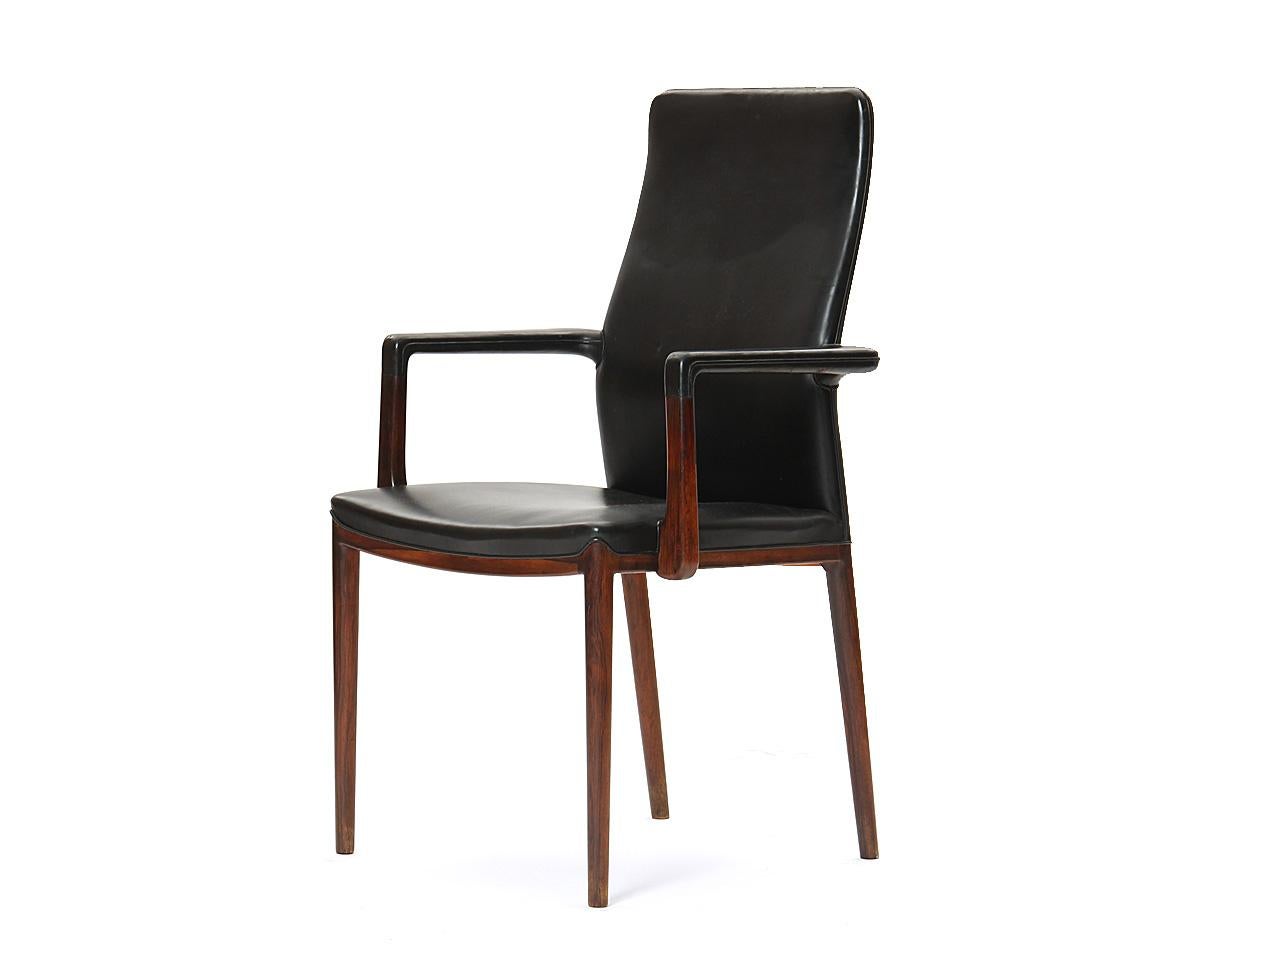 Ein seltener und schöner Satz von 8 skulpturalen Esszimmerstühlen aus Palisanderholz, die ihr ursprüngliches schwarzes Leder behalten haben; der Satz besteht aus sechs Seitenstühlen und zwei Sesseln. Entworfen von Helge Vestergaard Jensen und